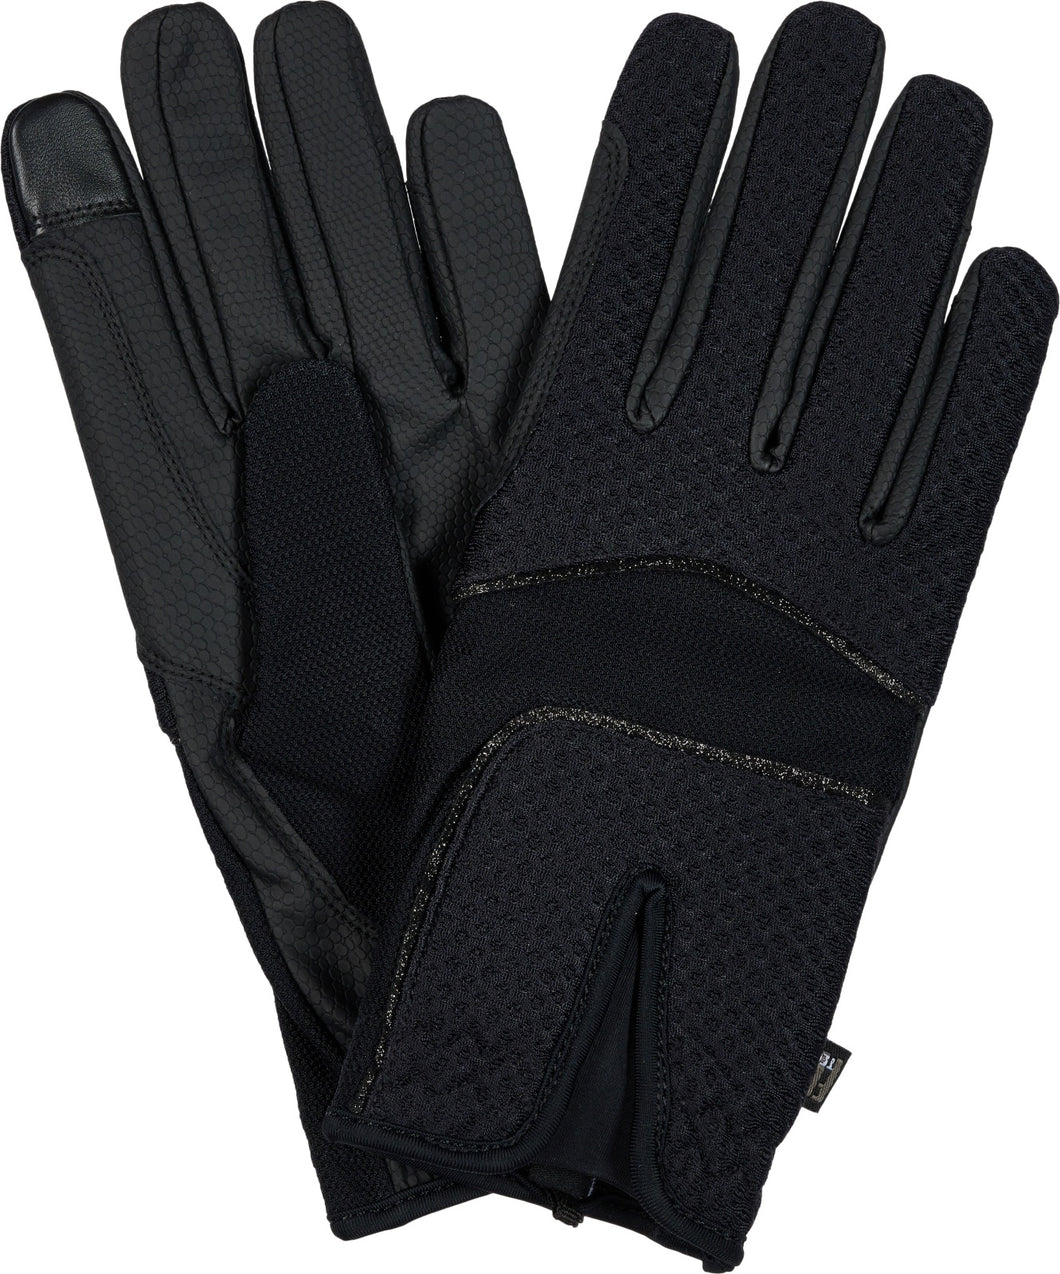 Catago Fir Tech Ness Gloves